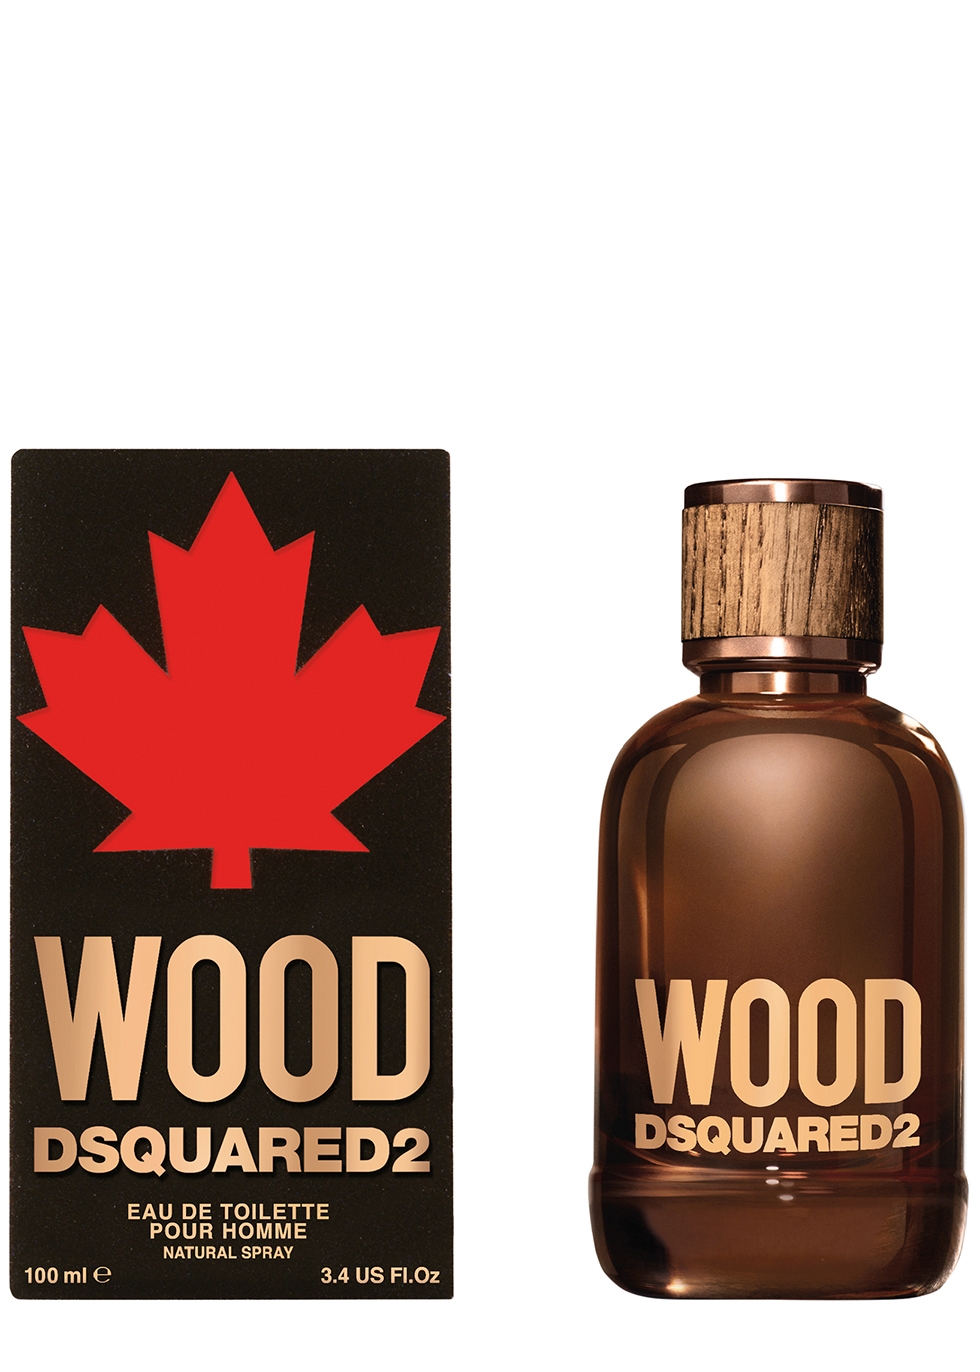 dsquared wood man